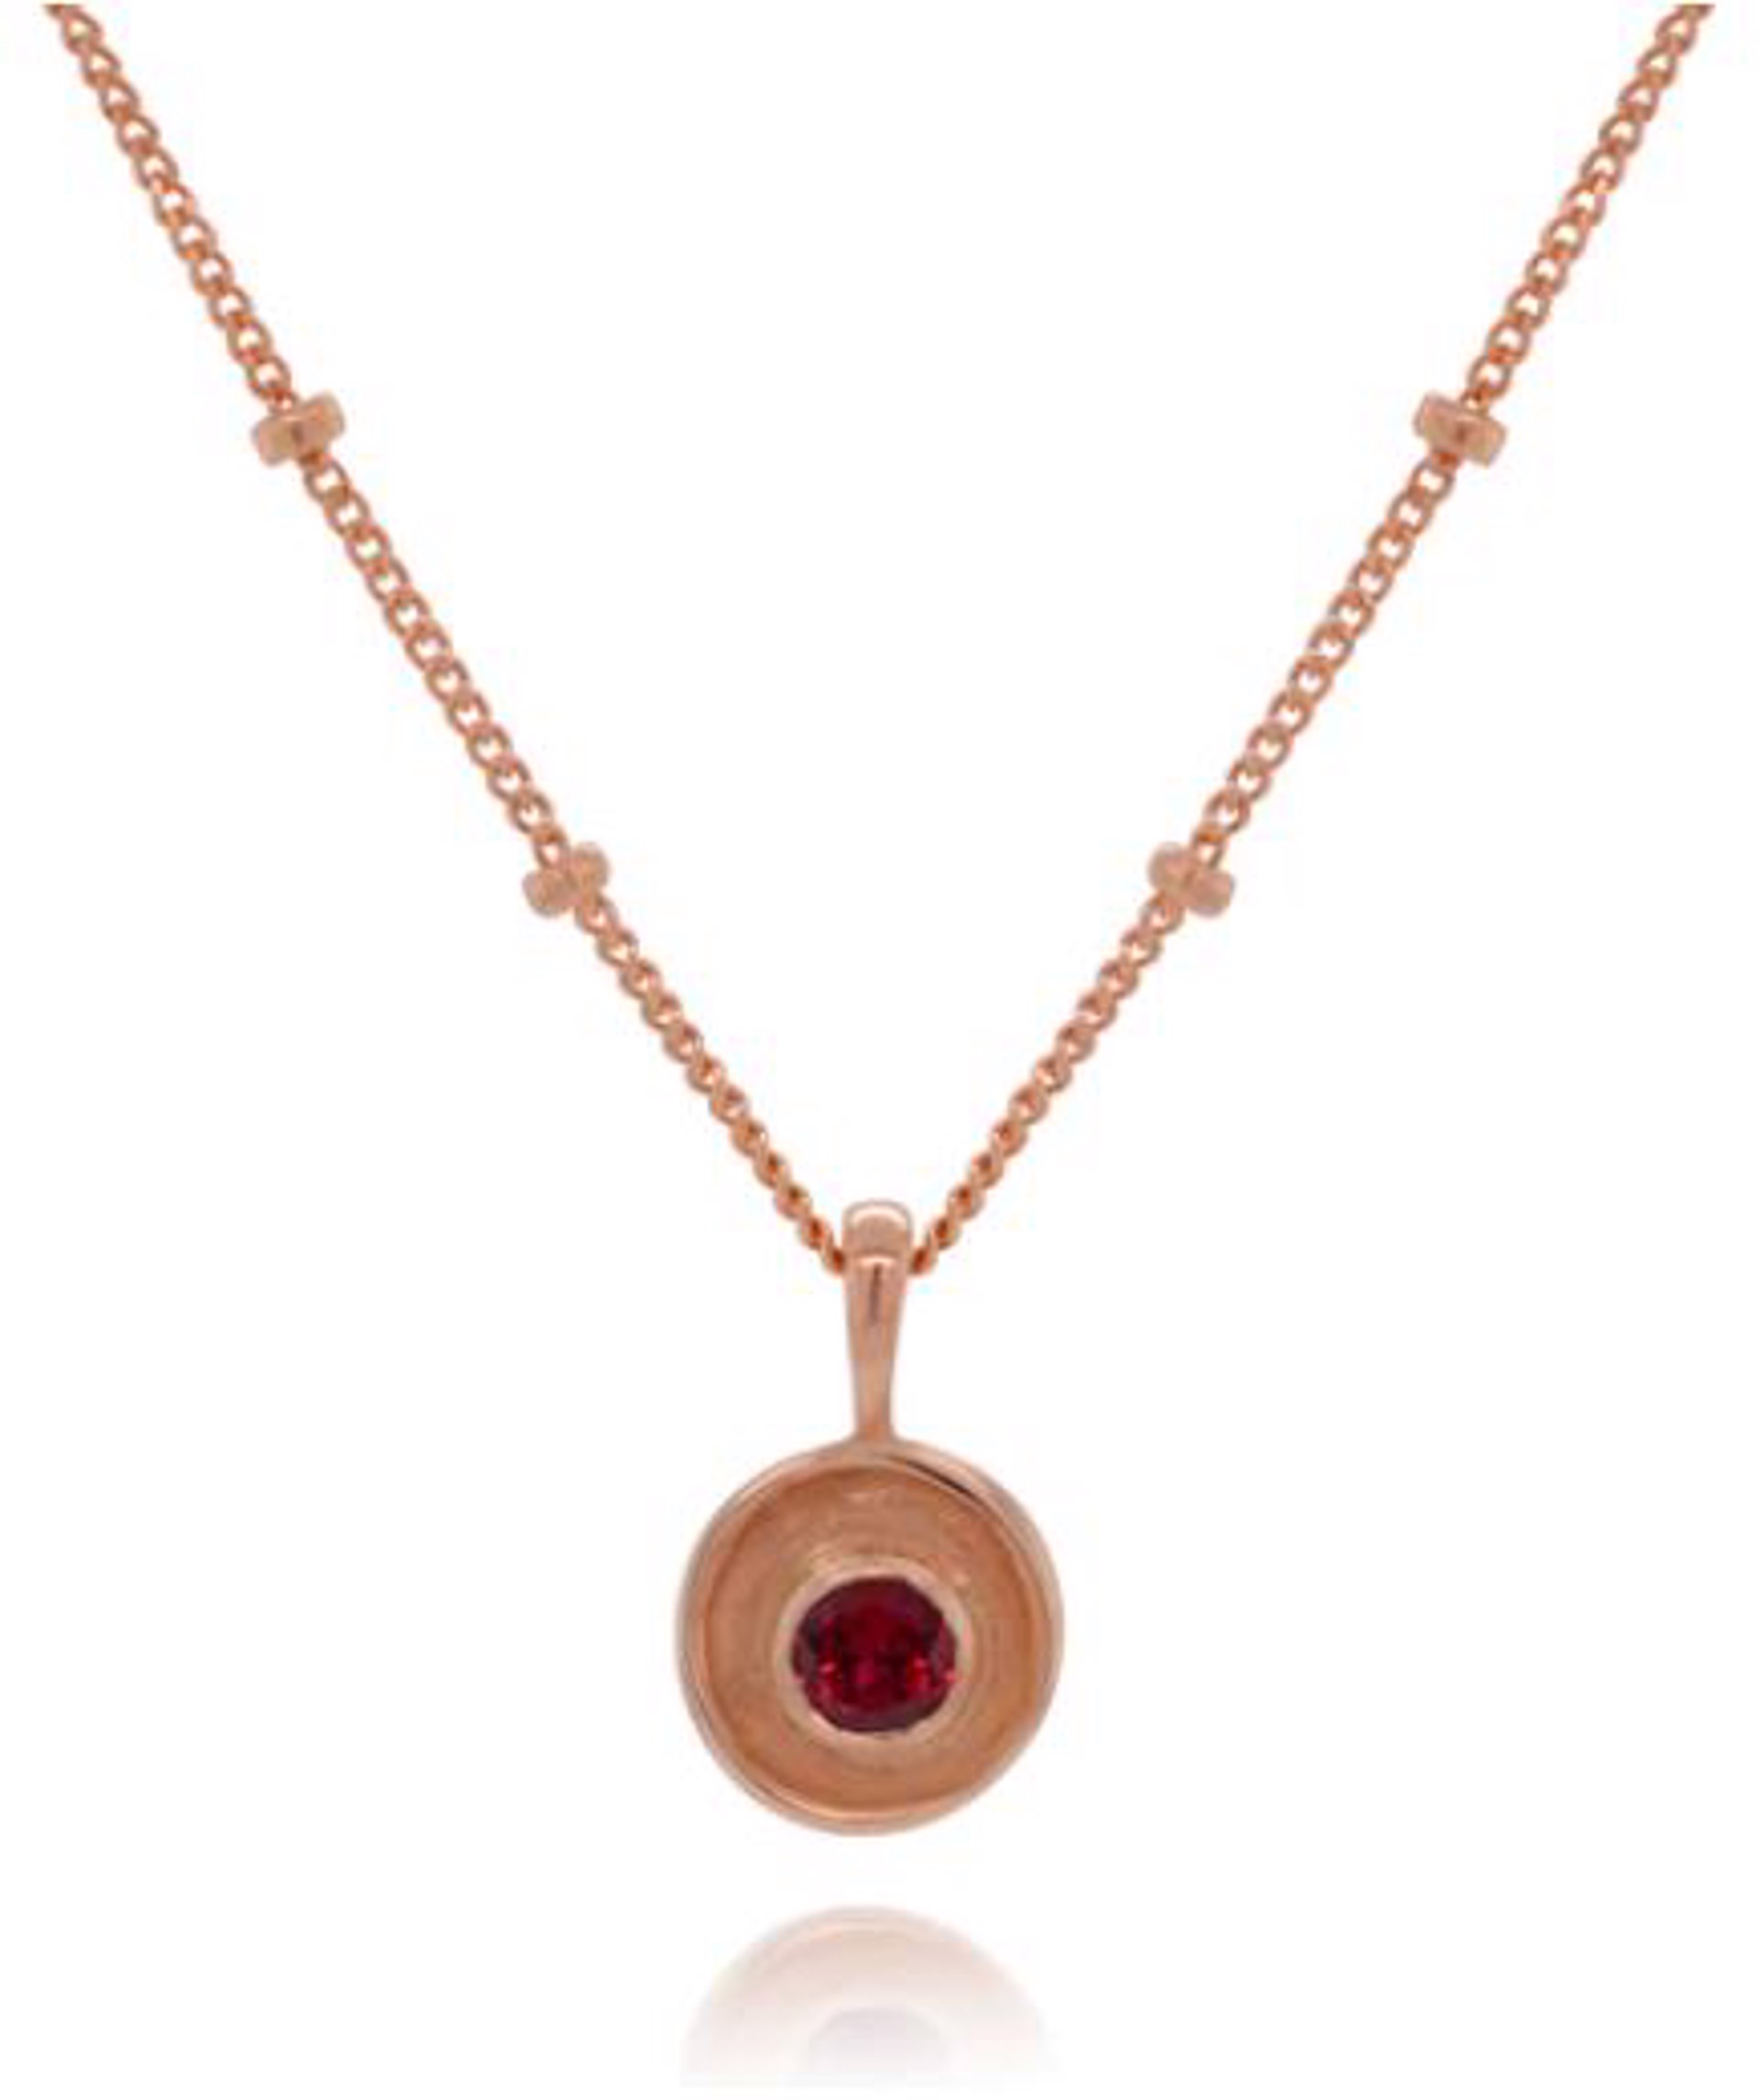 Petite Pop on Dewdrop Chain Necklace - 14k Rose Gold & Pink Tourmaline by Kristen Baird